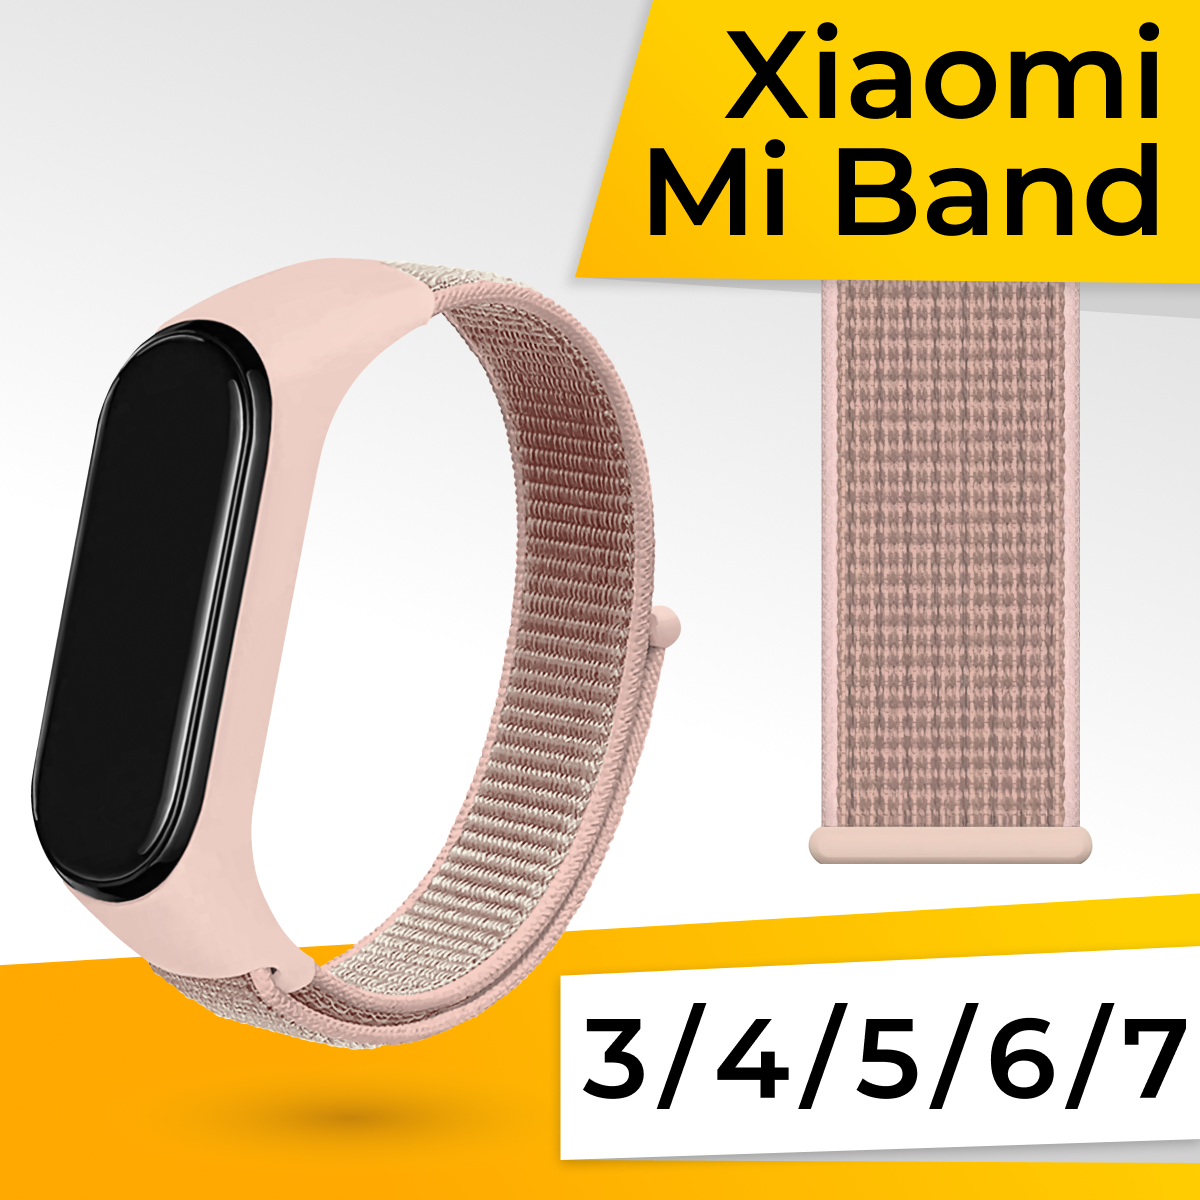 Нейлоновый ремешок для фитнес браслета Xiaomi Mi Band 3, 4, 5, 6, 7 / Спортивный тканевый браслет на липучке для часов Сяоми Ми Бэнд / Черно-белый